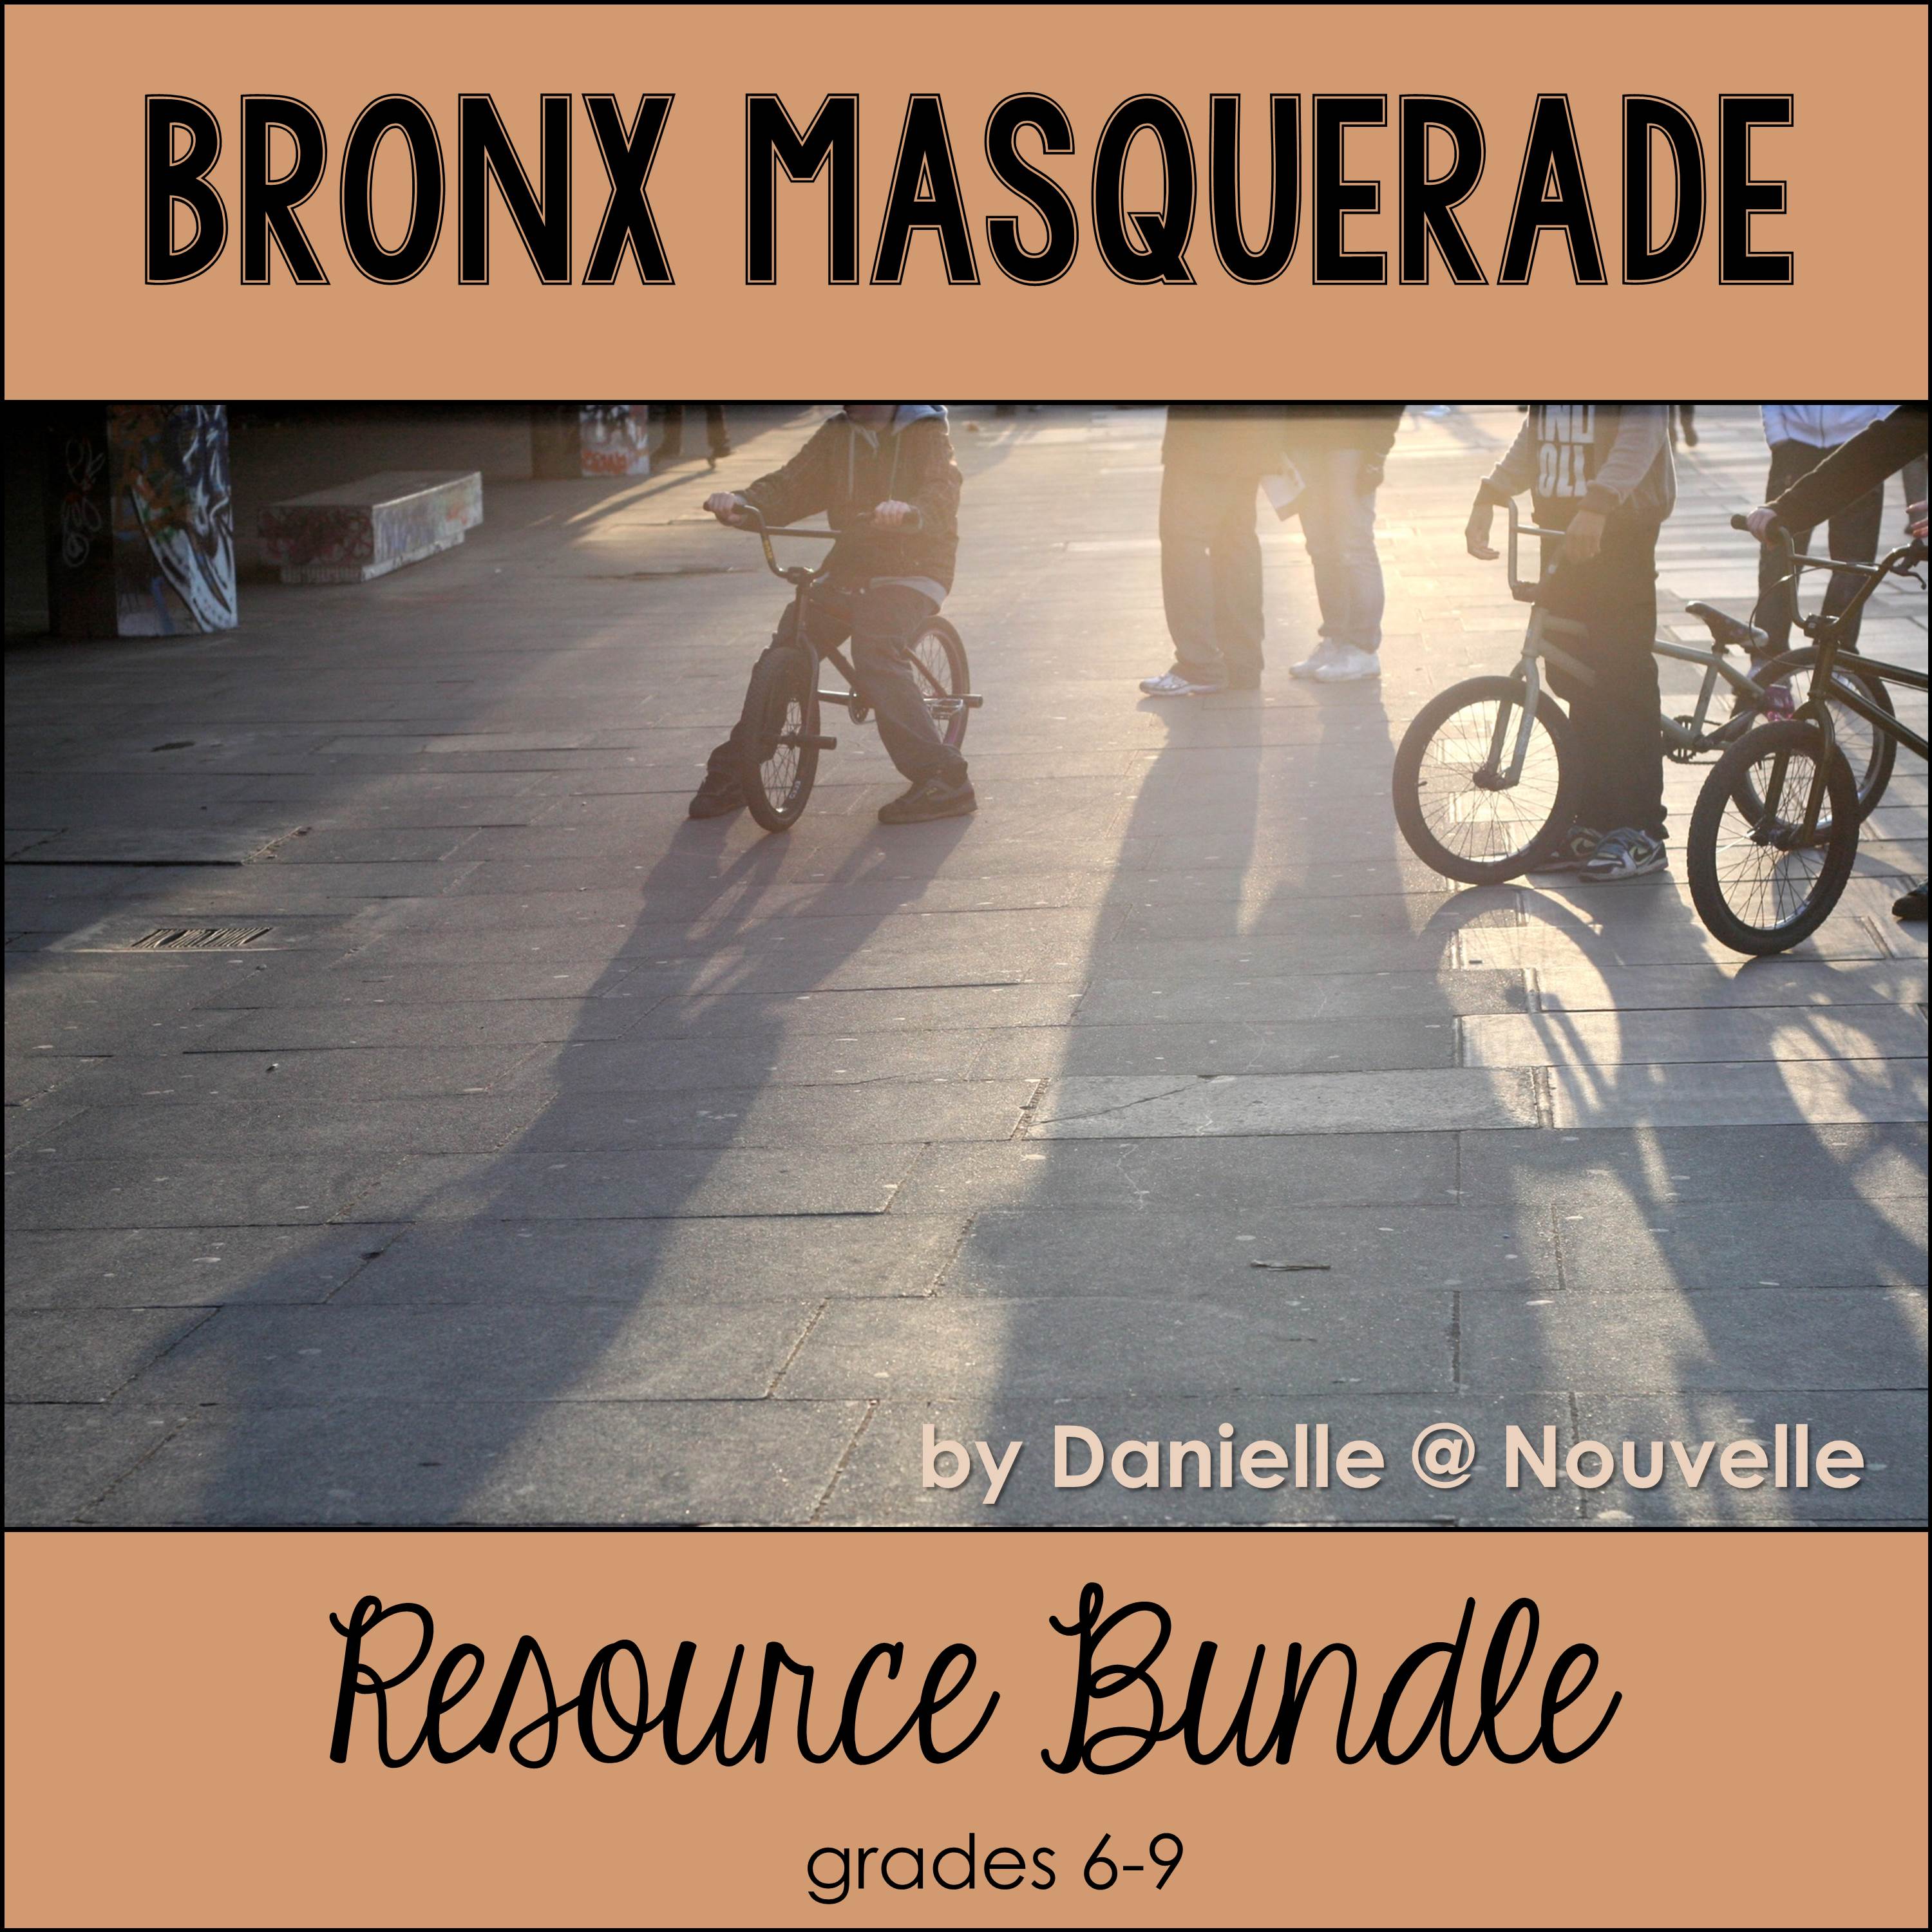 Bronx Masquerade Character Analysis Chart